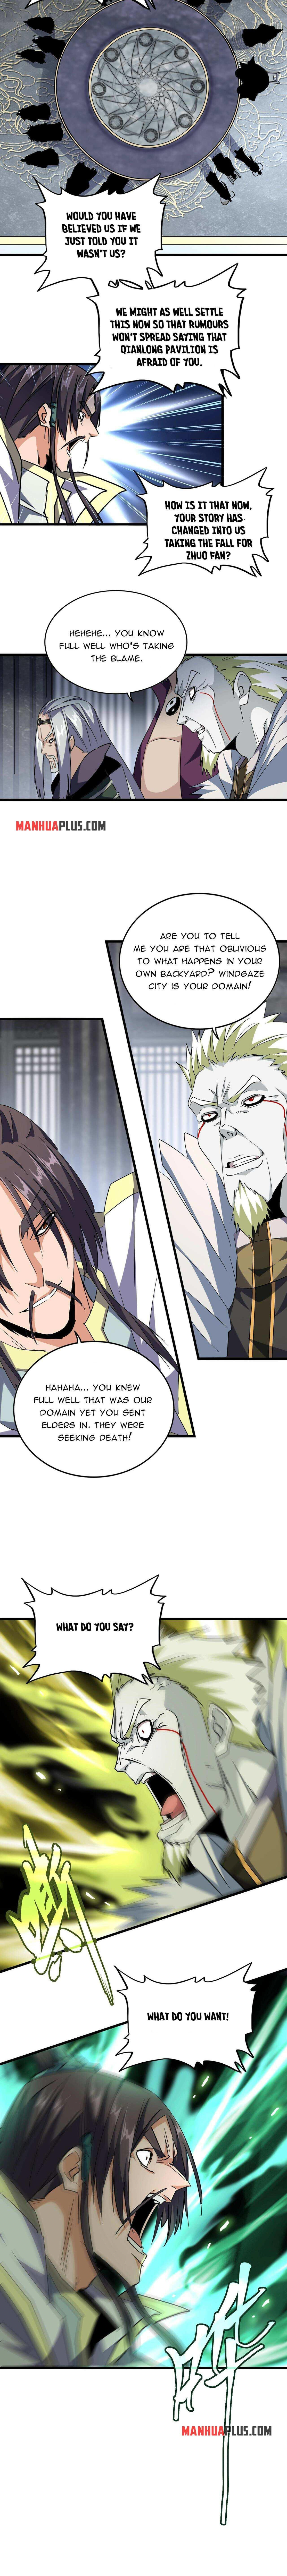 Magic Emperor Chapter 219 page 8 - Mangakakalot